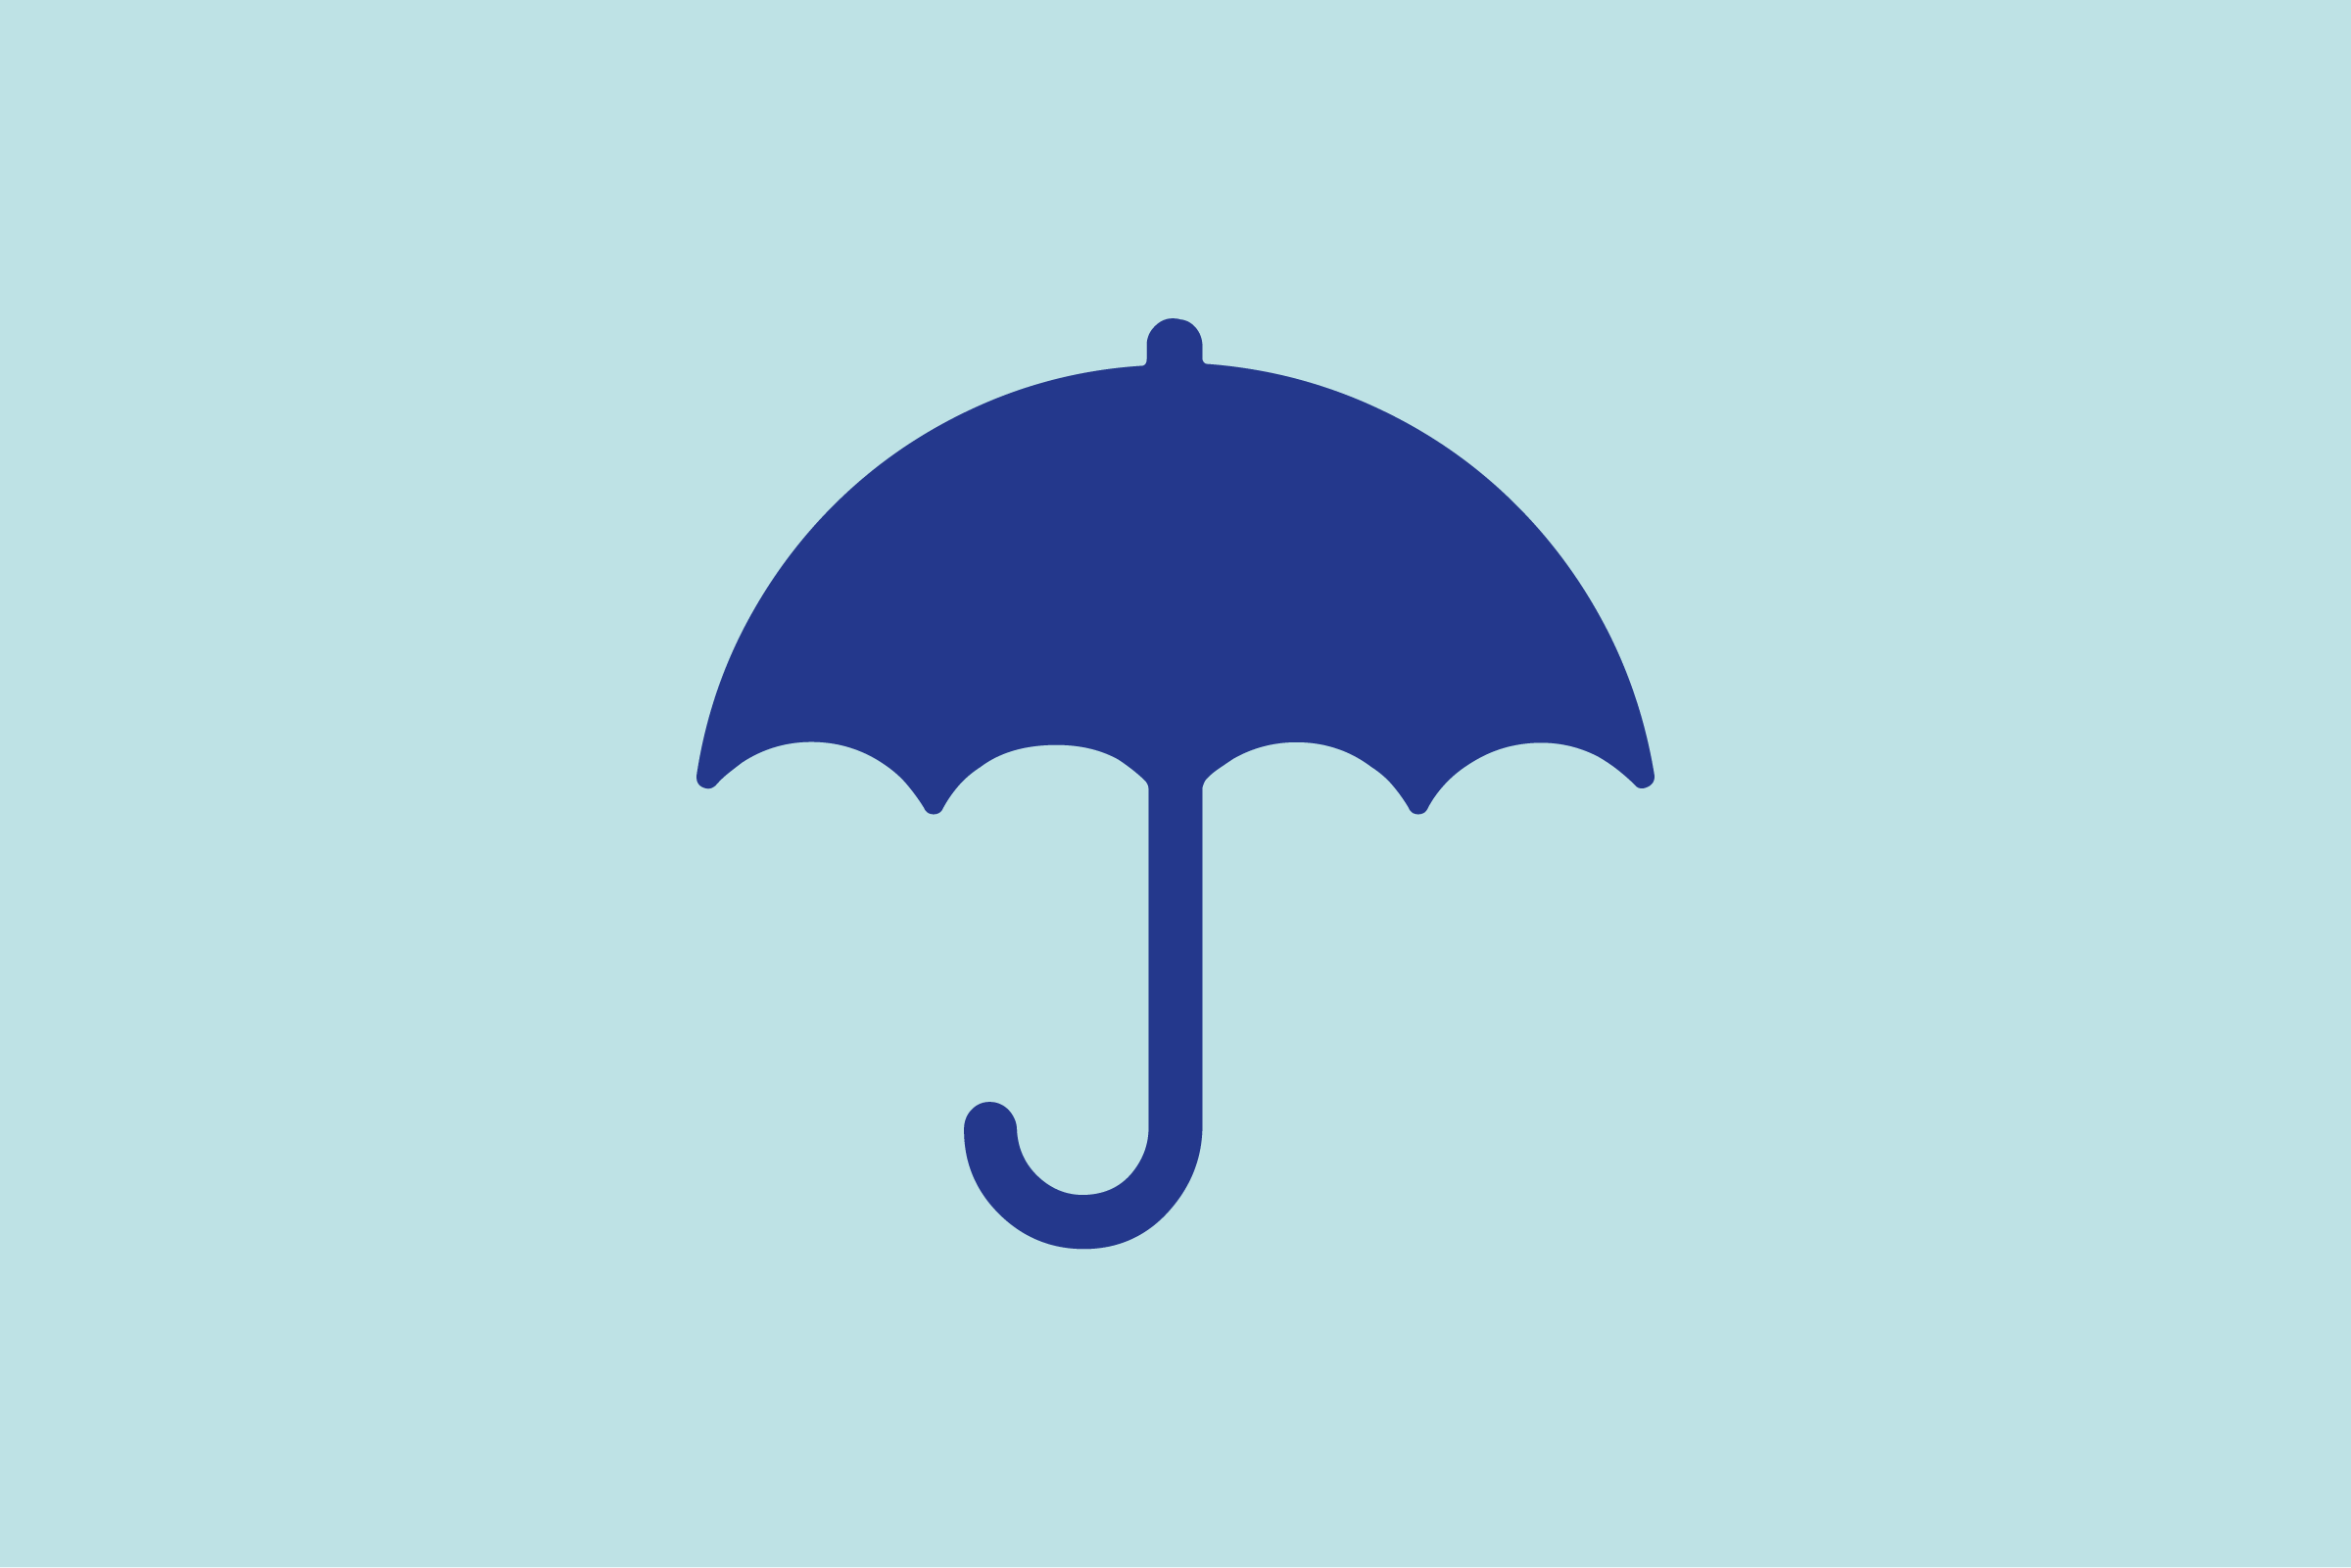 Piktogram af paraply